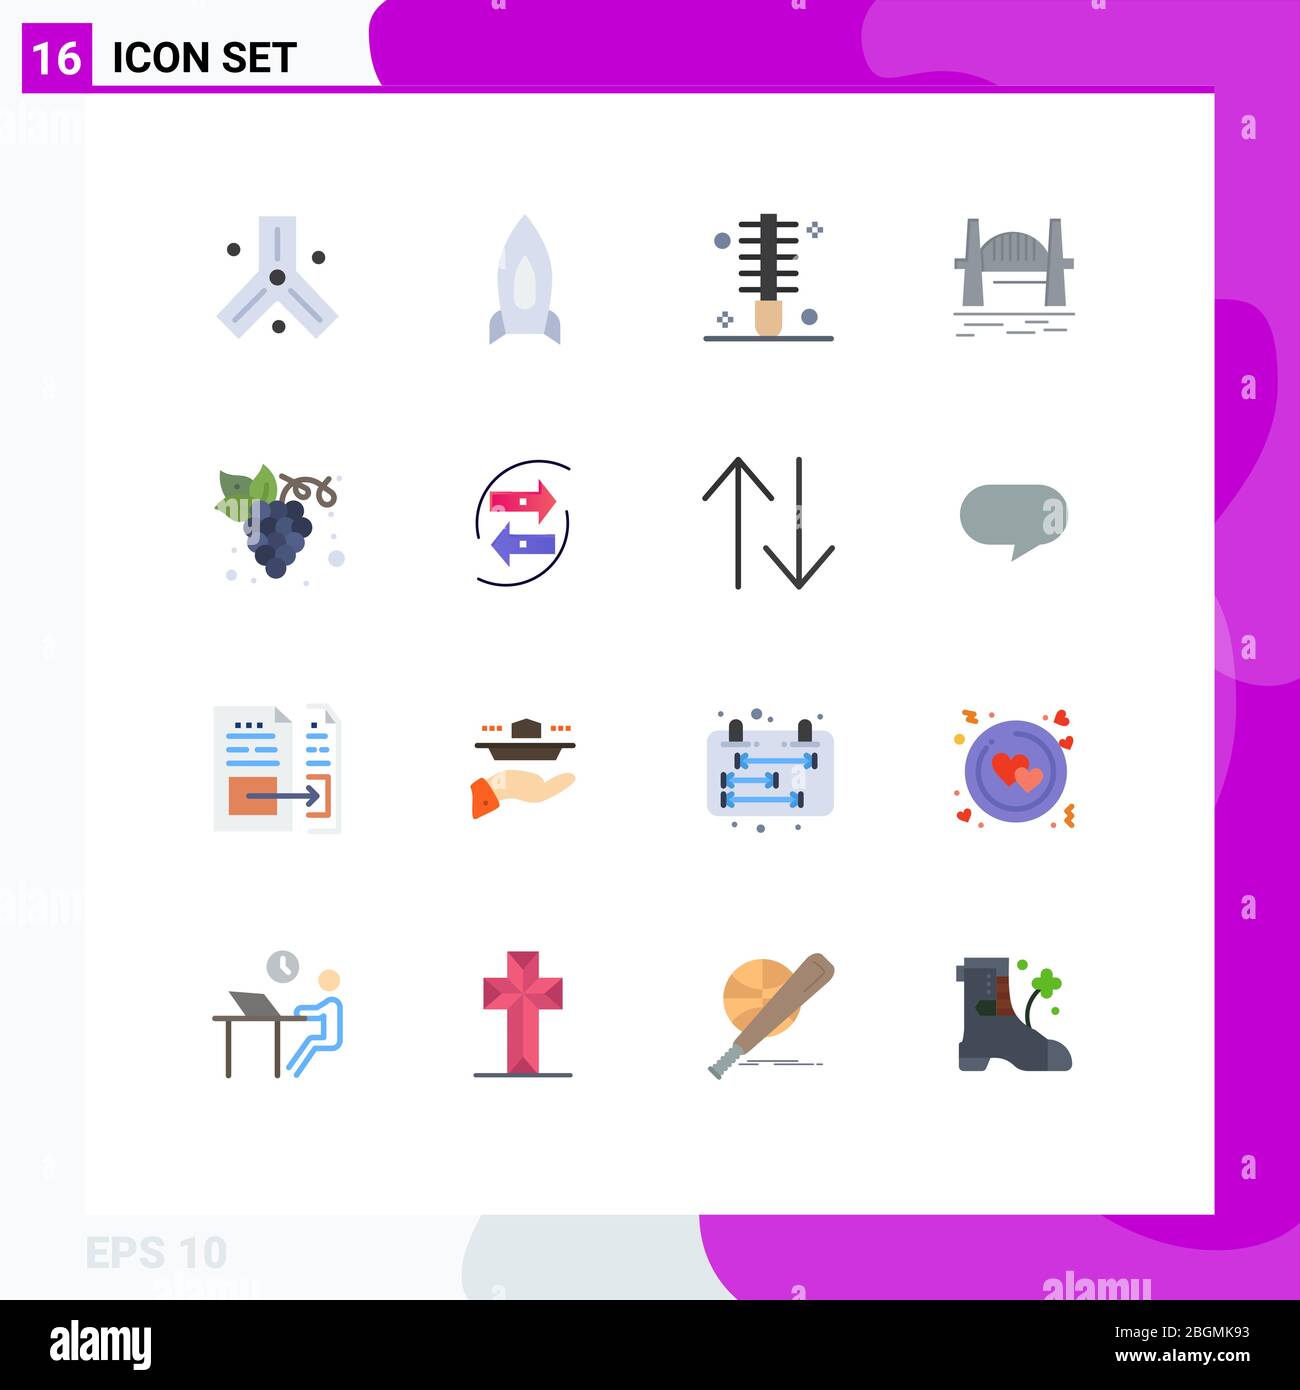 Piktogramm Set von 16 einfachen flachen Farben von Hafen, Brücke, Reisen, australien, Haare bearbeitbar Pack von Creative Vector Design-Elemente Stock Vektor